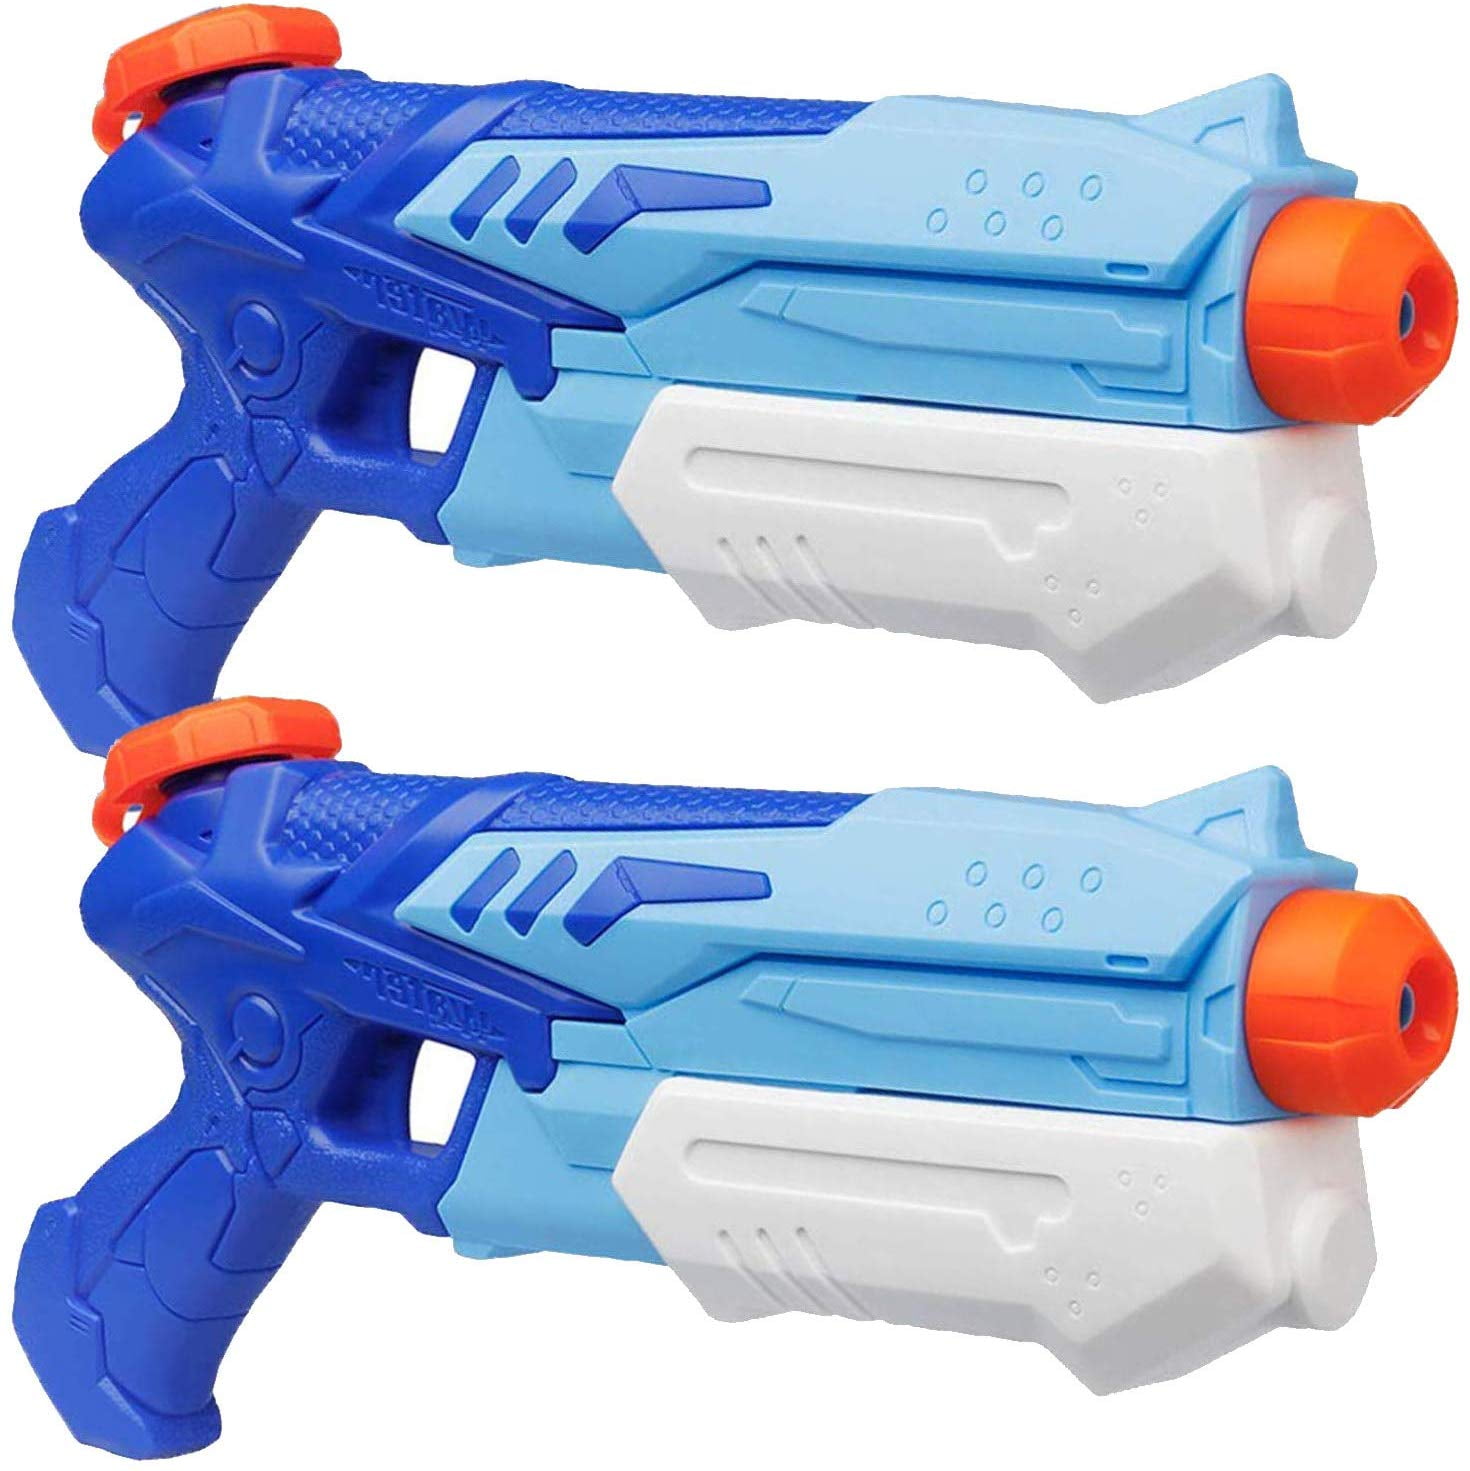 2 Pack Super Blaster Water Gun Soaker Toy for Kids Children's Gift New 